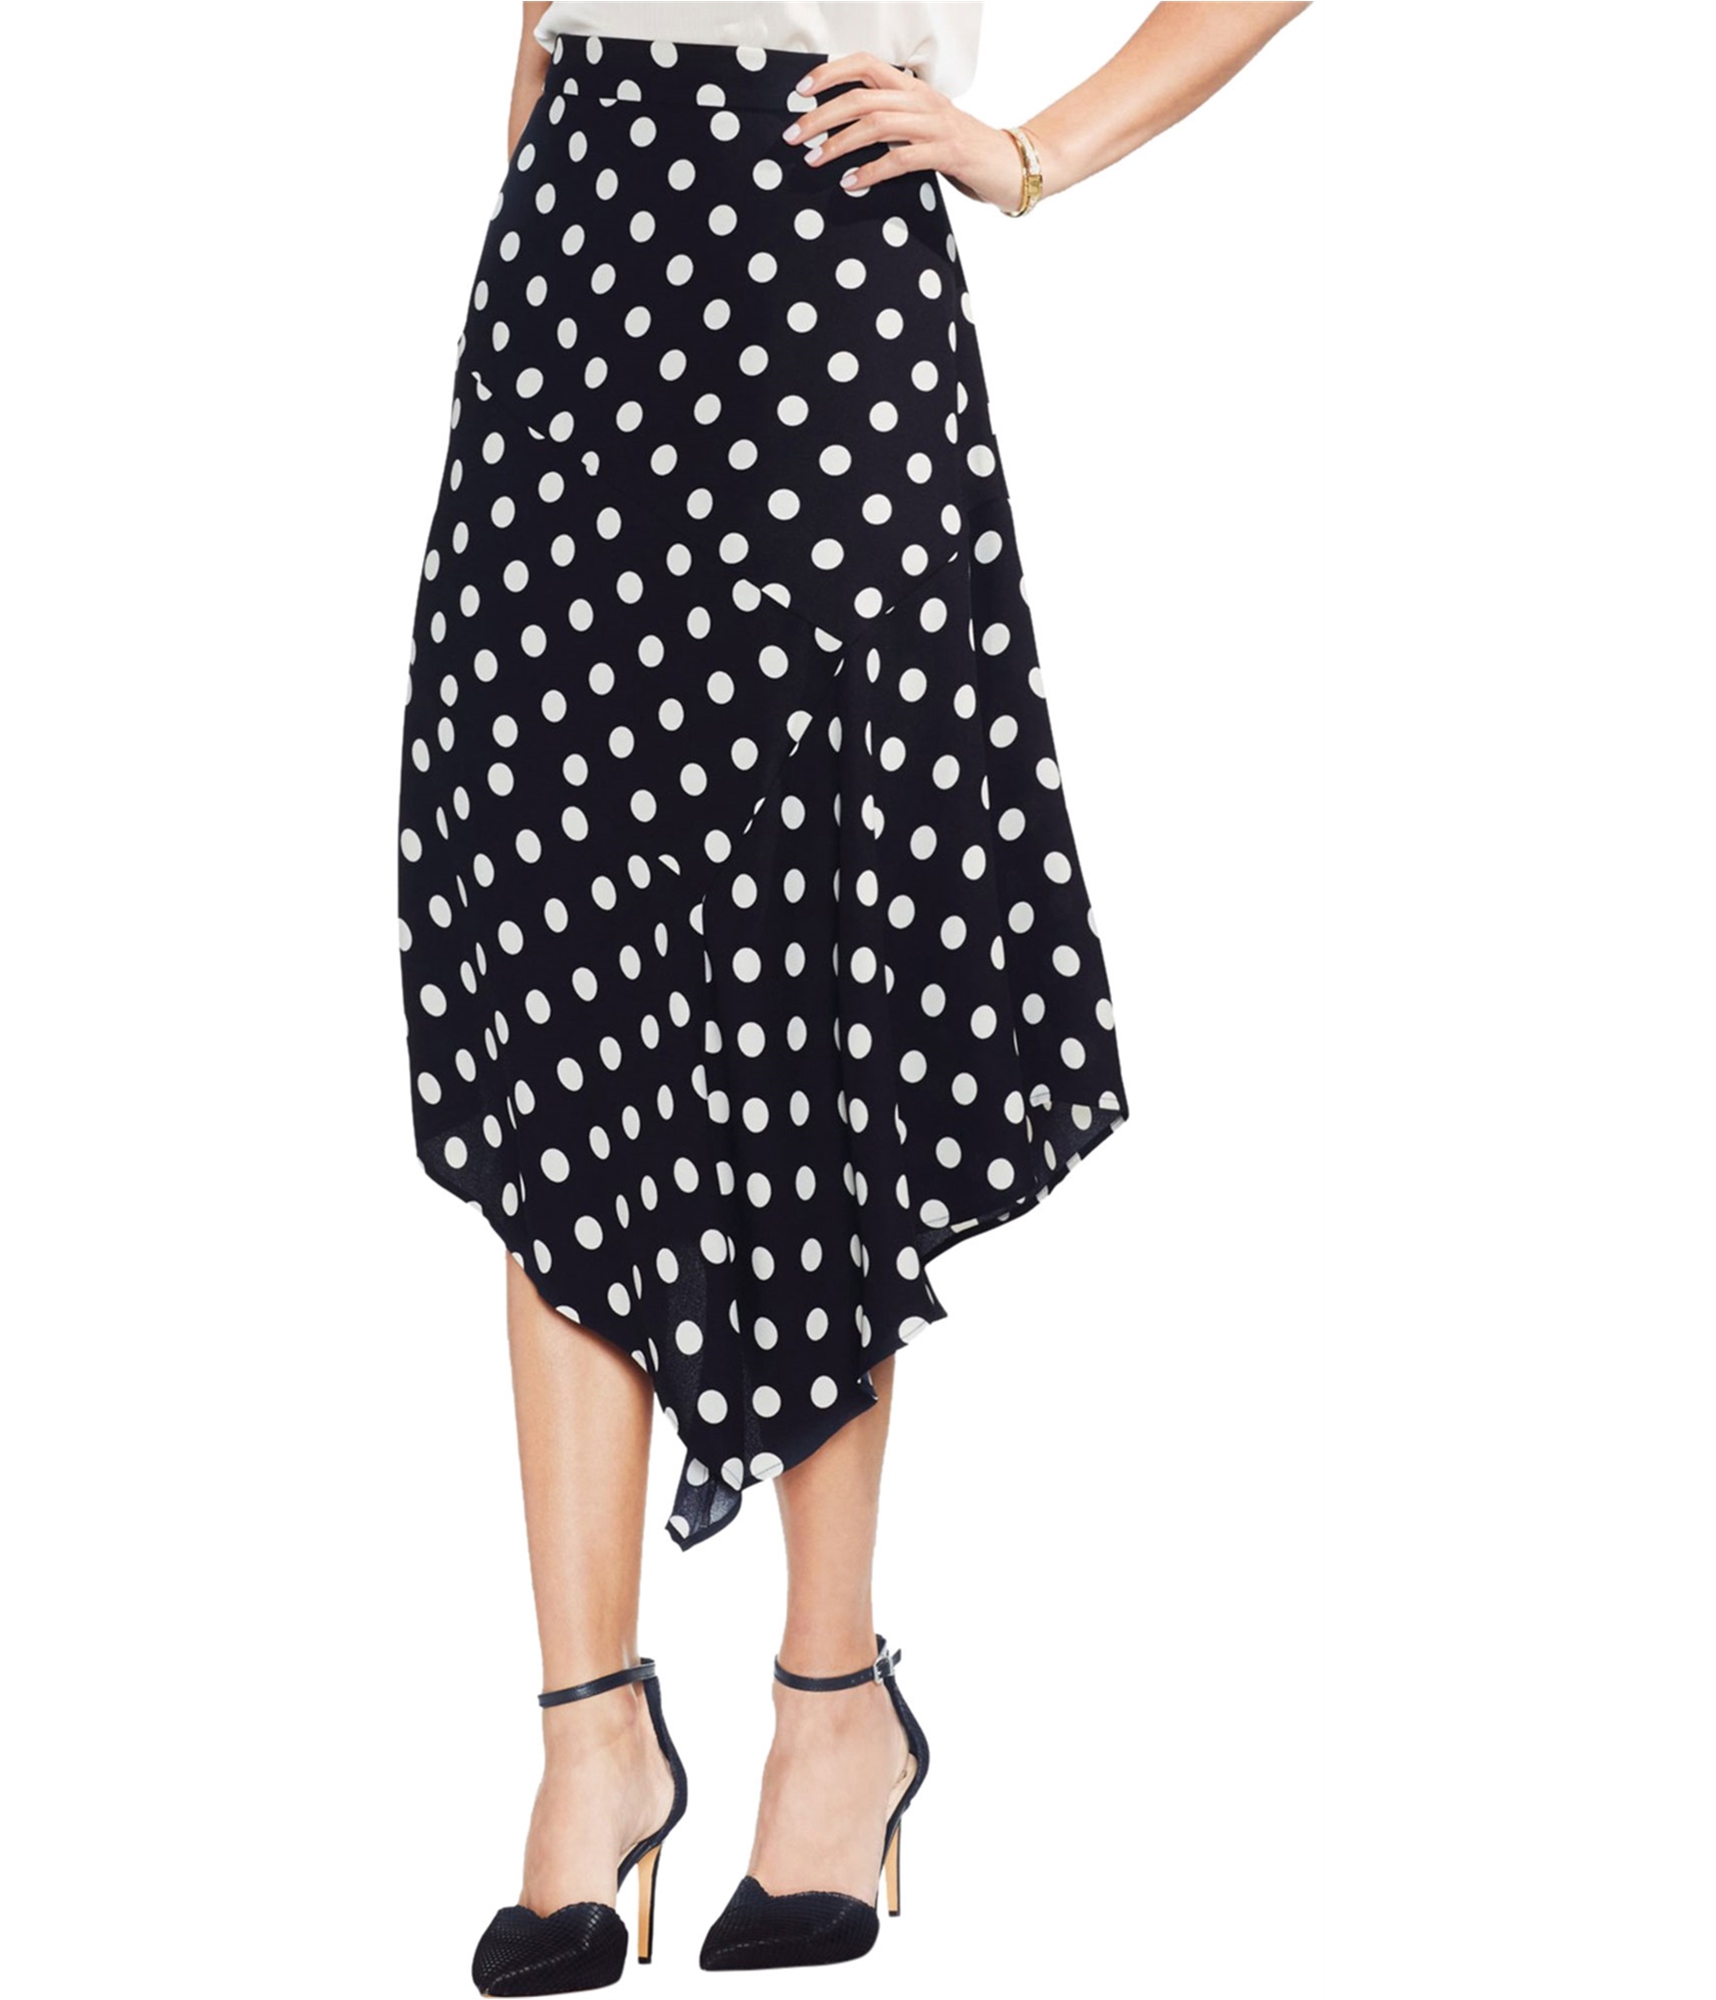 woman-wearing-black-polka-dot-asymmetrical-skirt